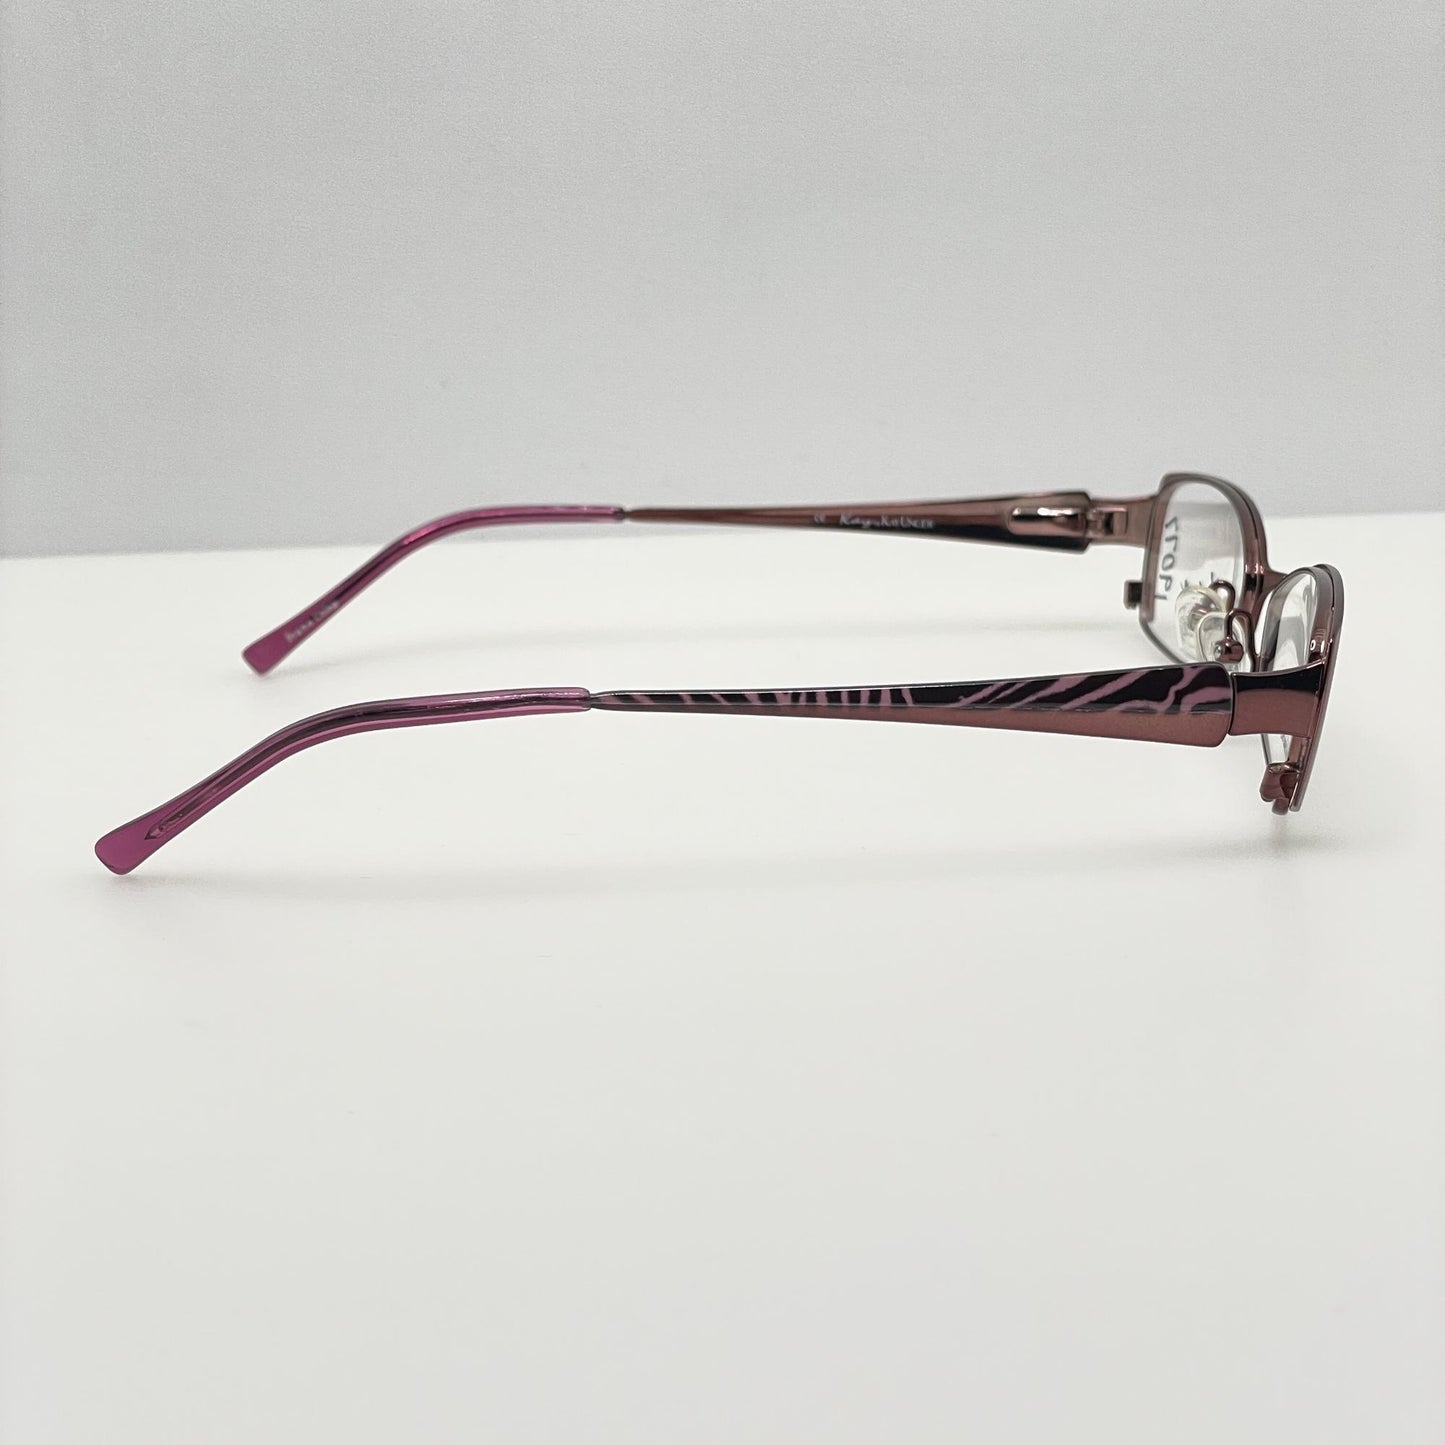 Kay Unger Eyeglasses Eye Glasses Frames K506 PNK 50-17-135